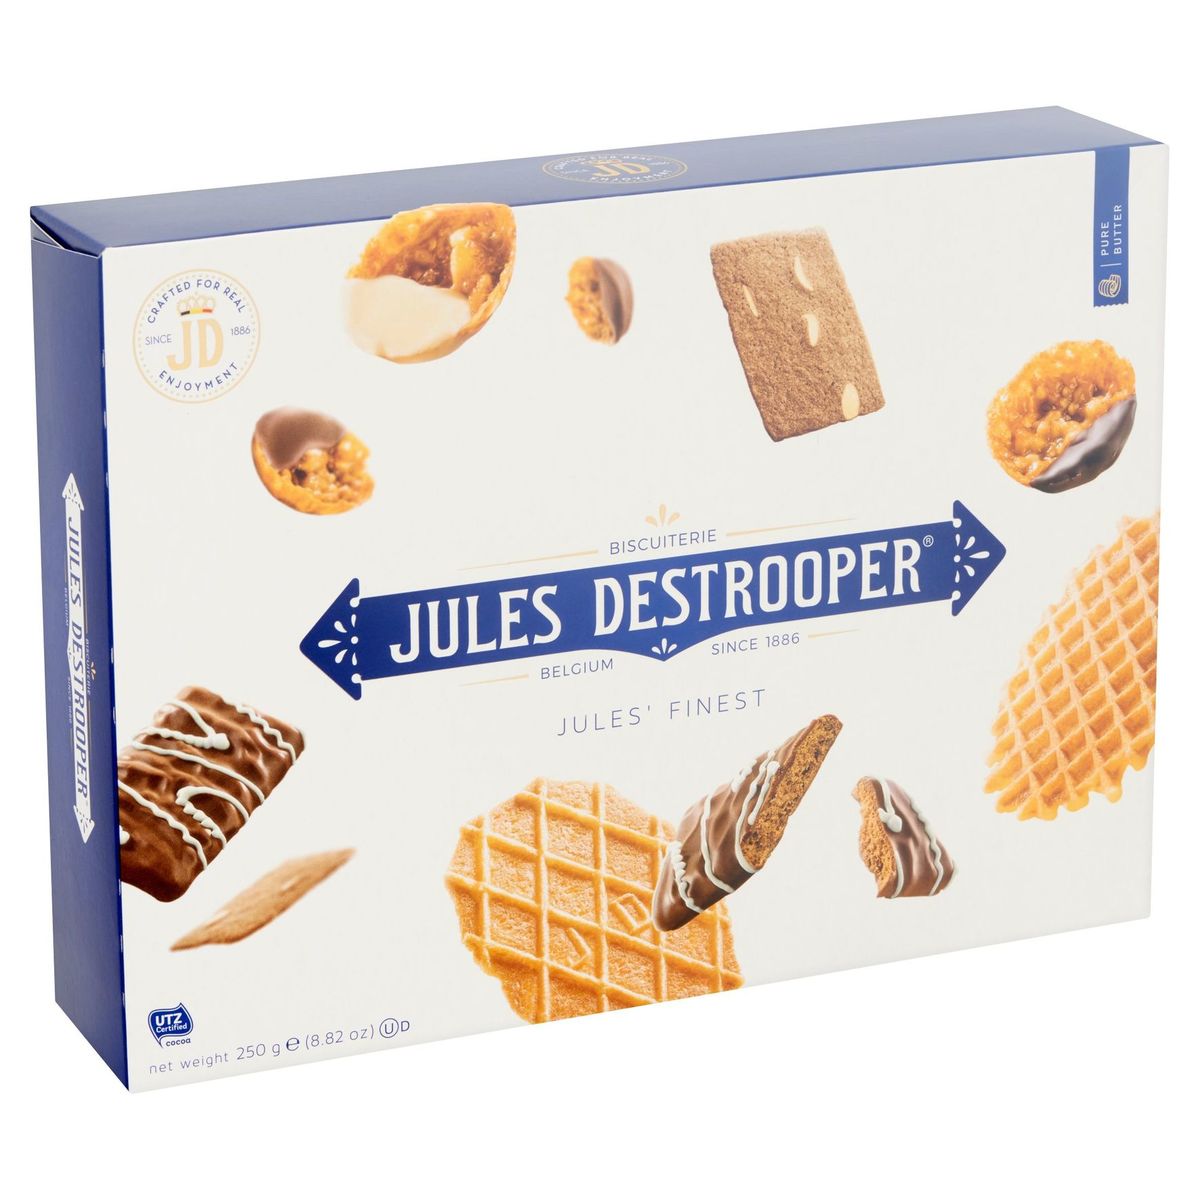 Jules Destrooper Jules' Finest 250 g